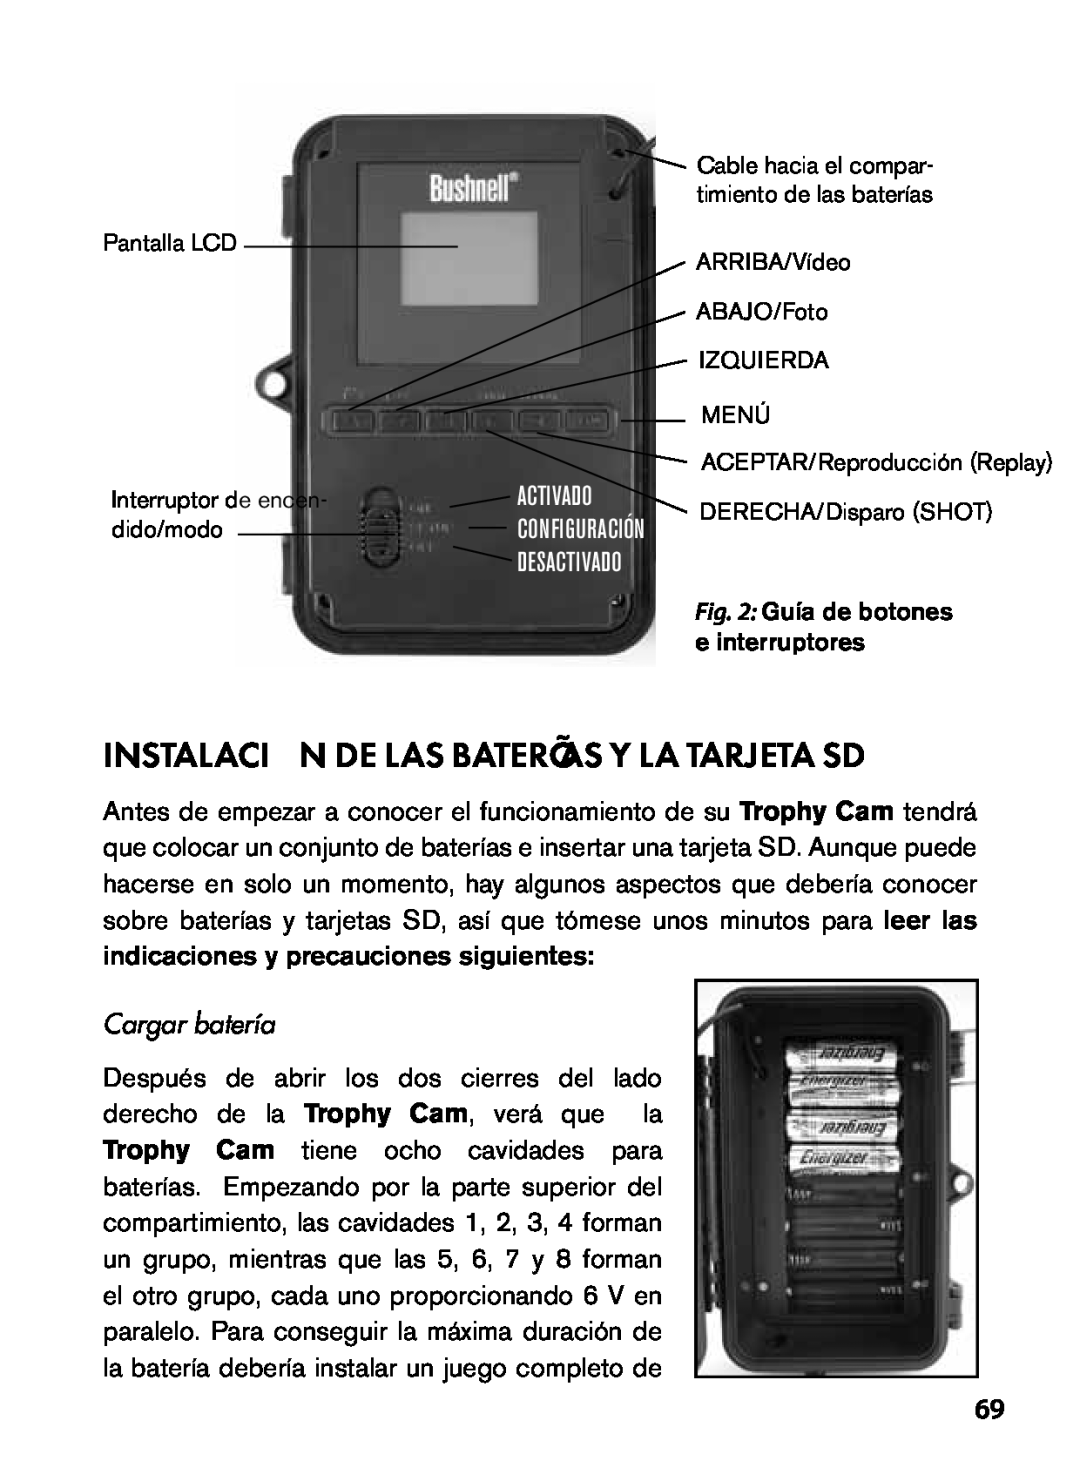 Bushnell 119455, 119445, 119435 instruction manual Instalación De Las Baterías Y La Tarjeta Sd, Activado, Cargar batería 